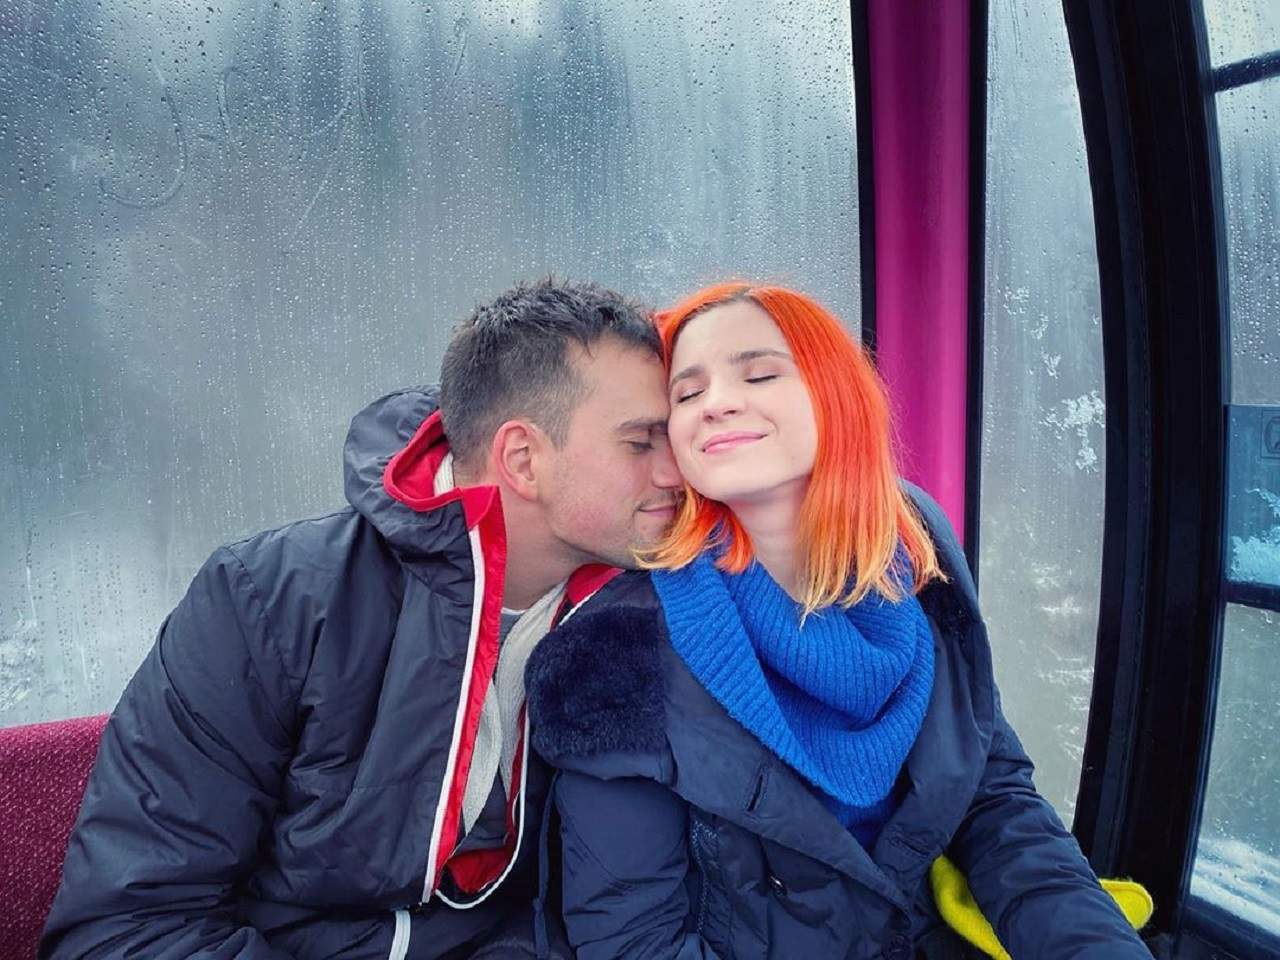 FOTO / Cristina Ciobănaşu şi Vlad Gherman, escapadă romantică. Unde au plecat cei doi îndrăgostiţi: "Am avut sentimentul că m-am întors în timp"